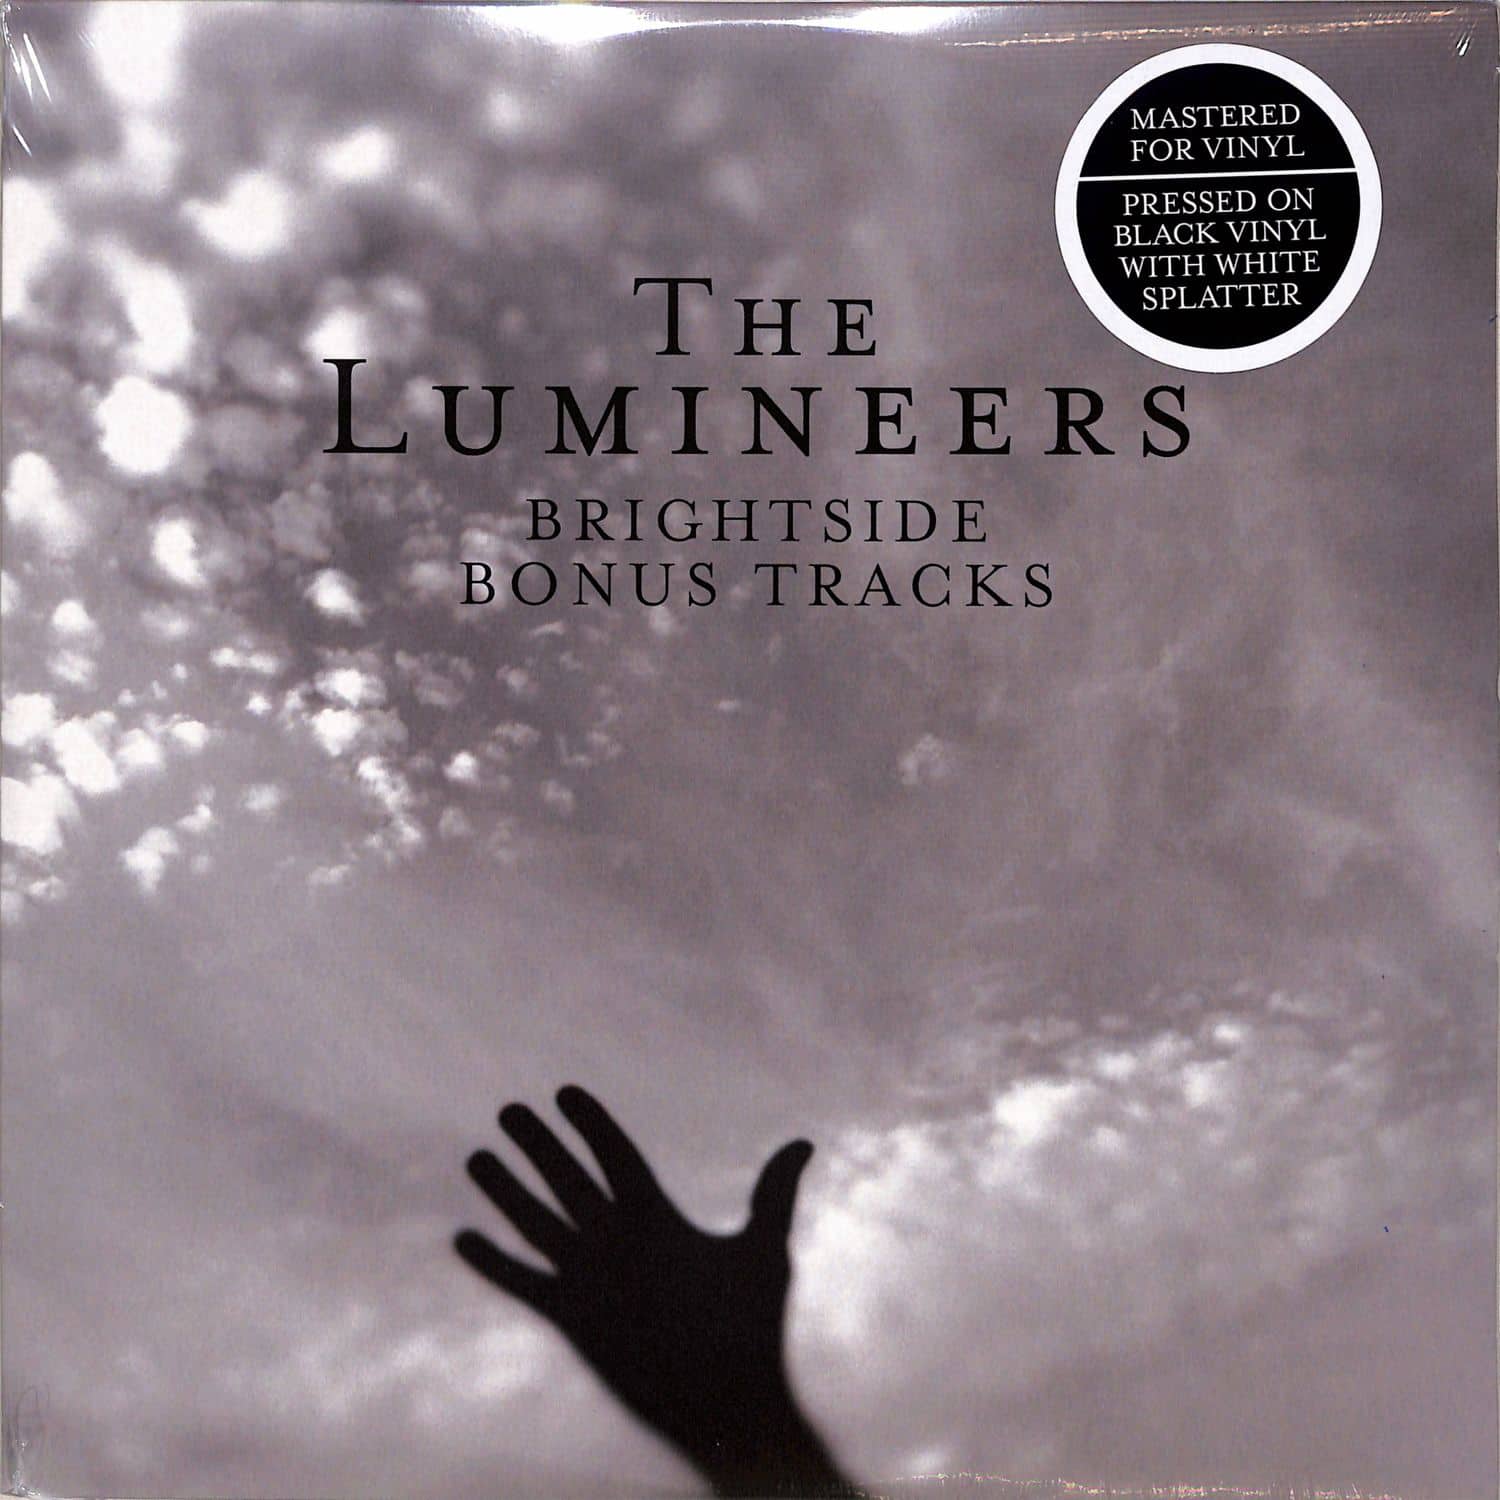 The Lumineers - BRIGHTSIDE 